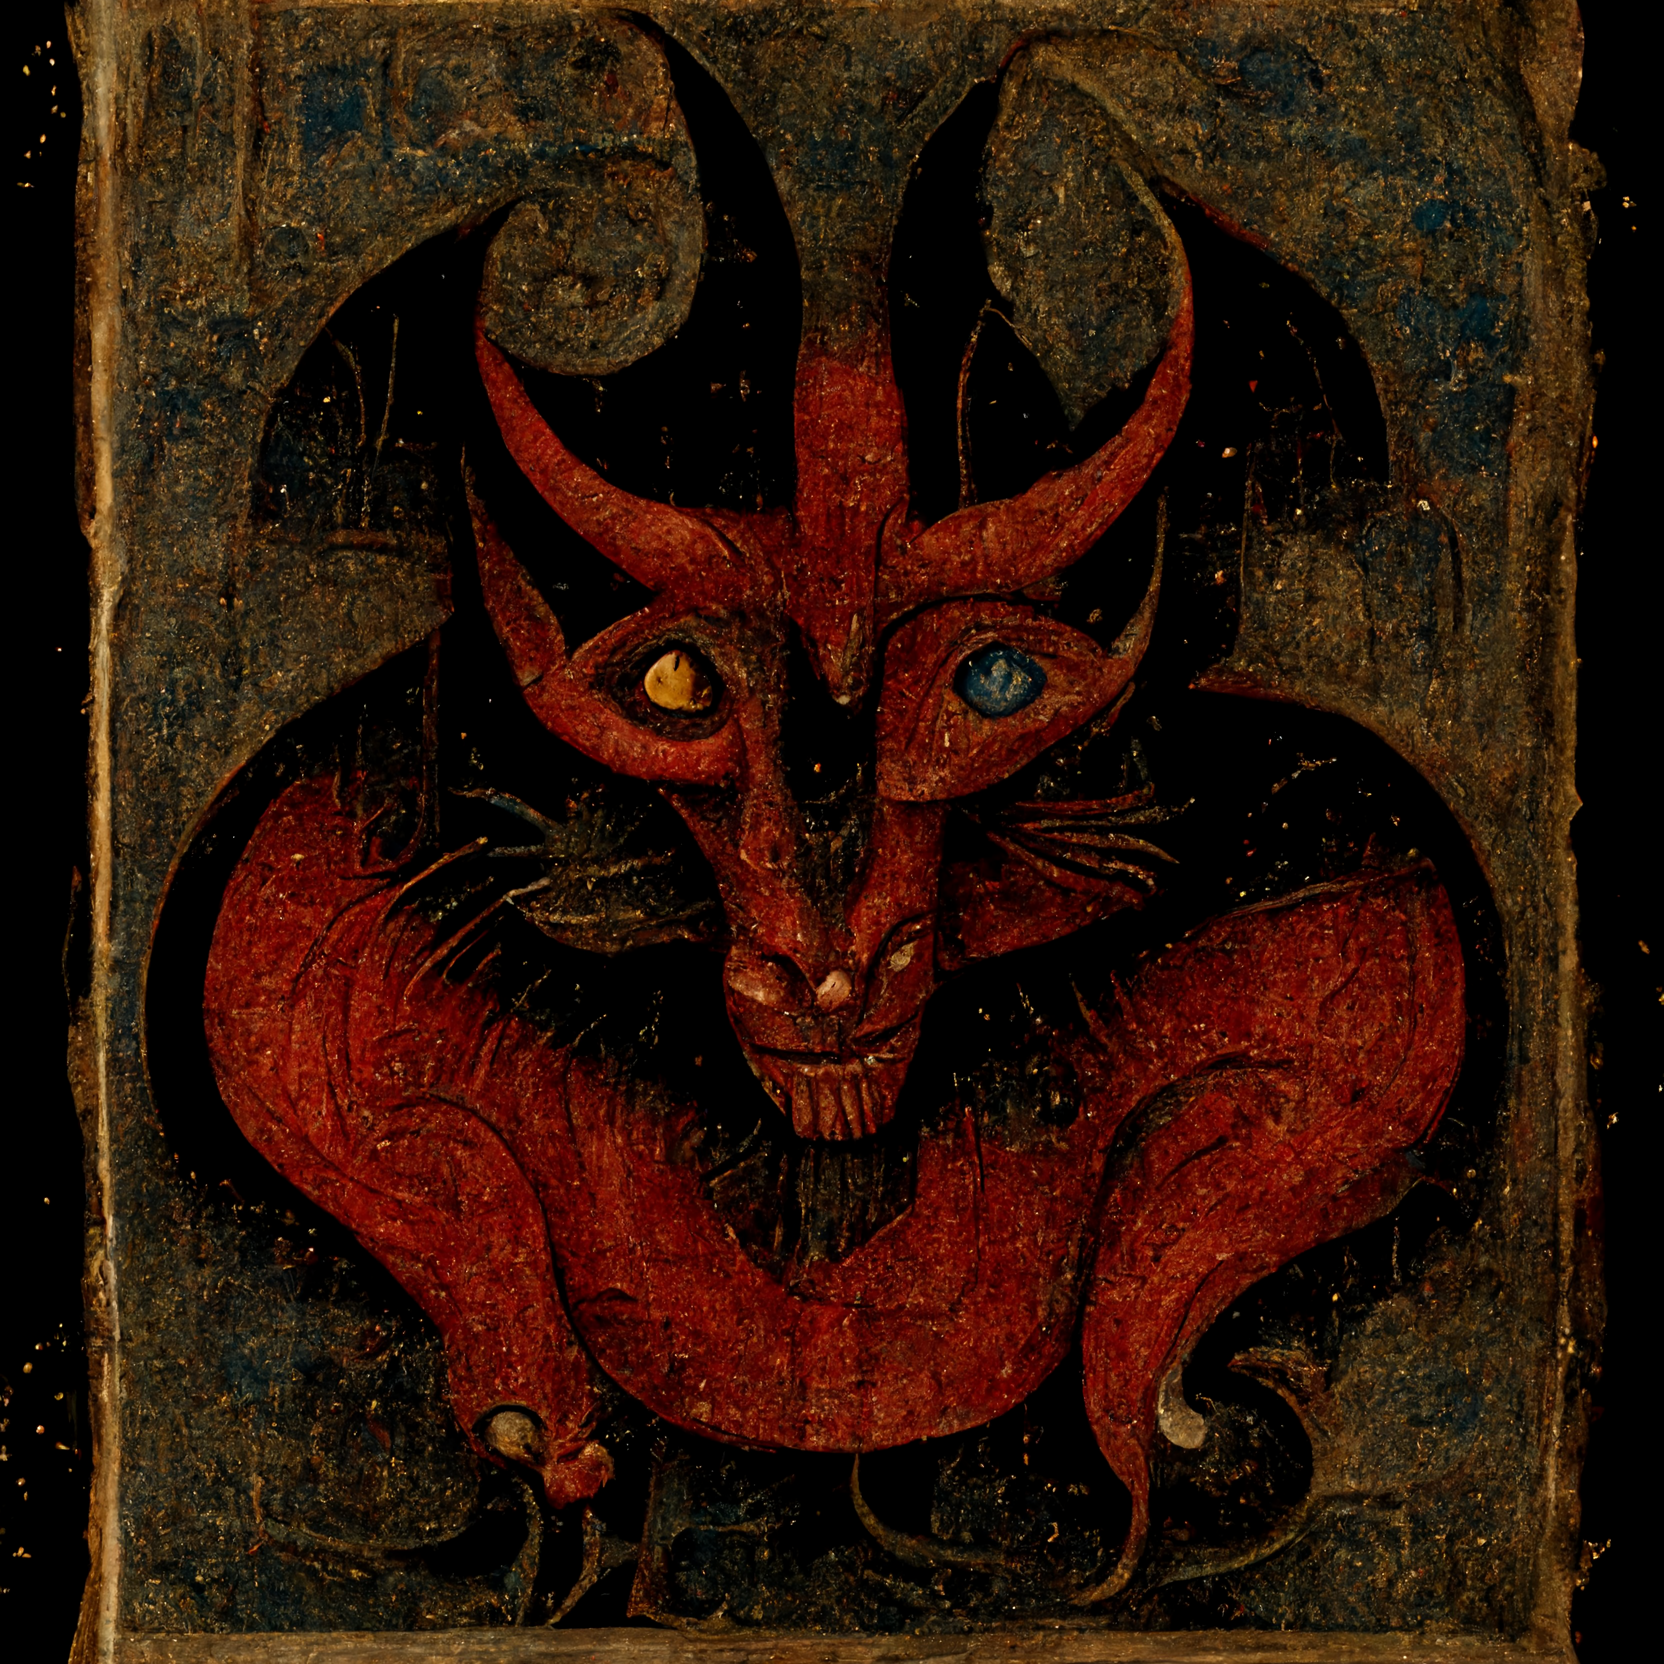 Ulysses_Black_devil_in_the_style_of_a_medieval_manuscript_08324ad1-8842-4027-bdaf-0dff6e047c70.png